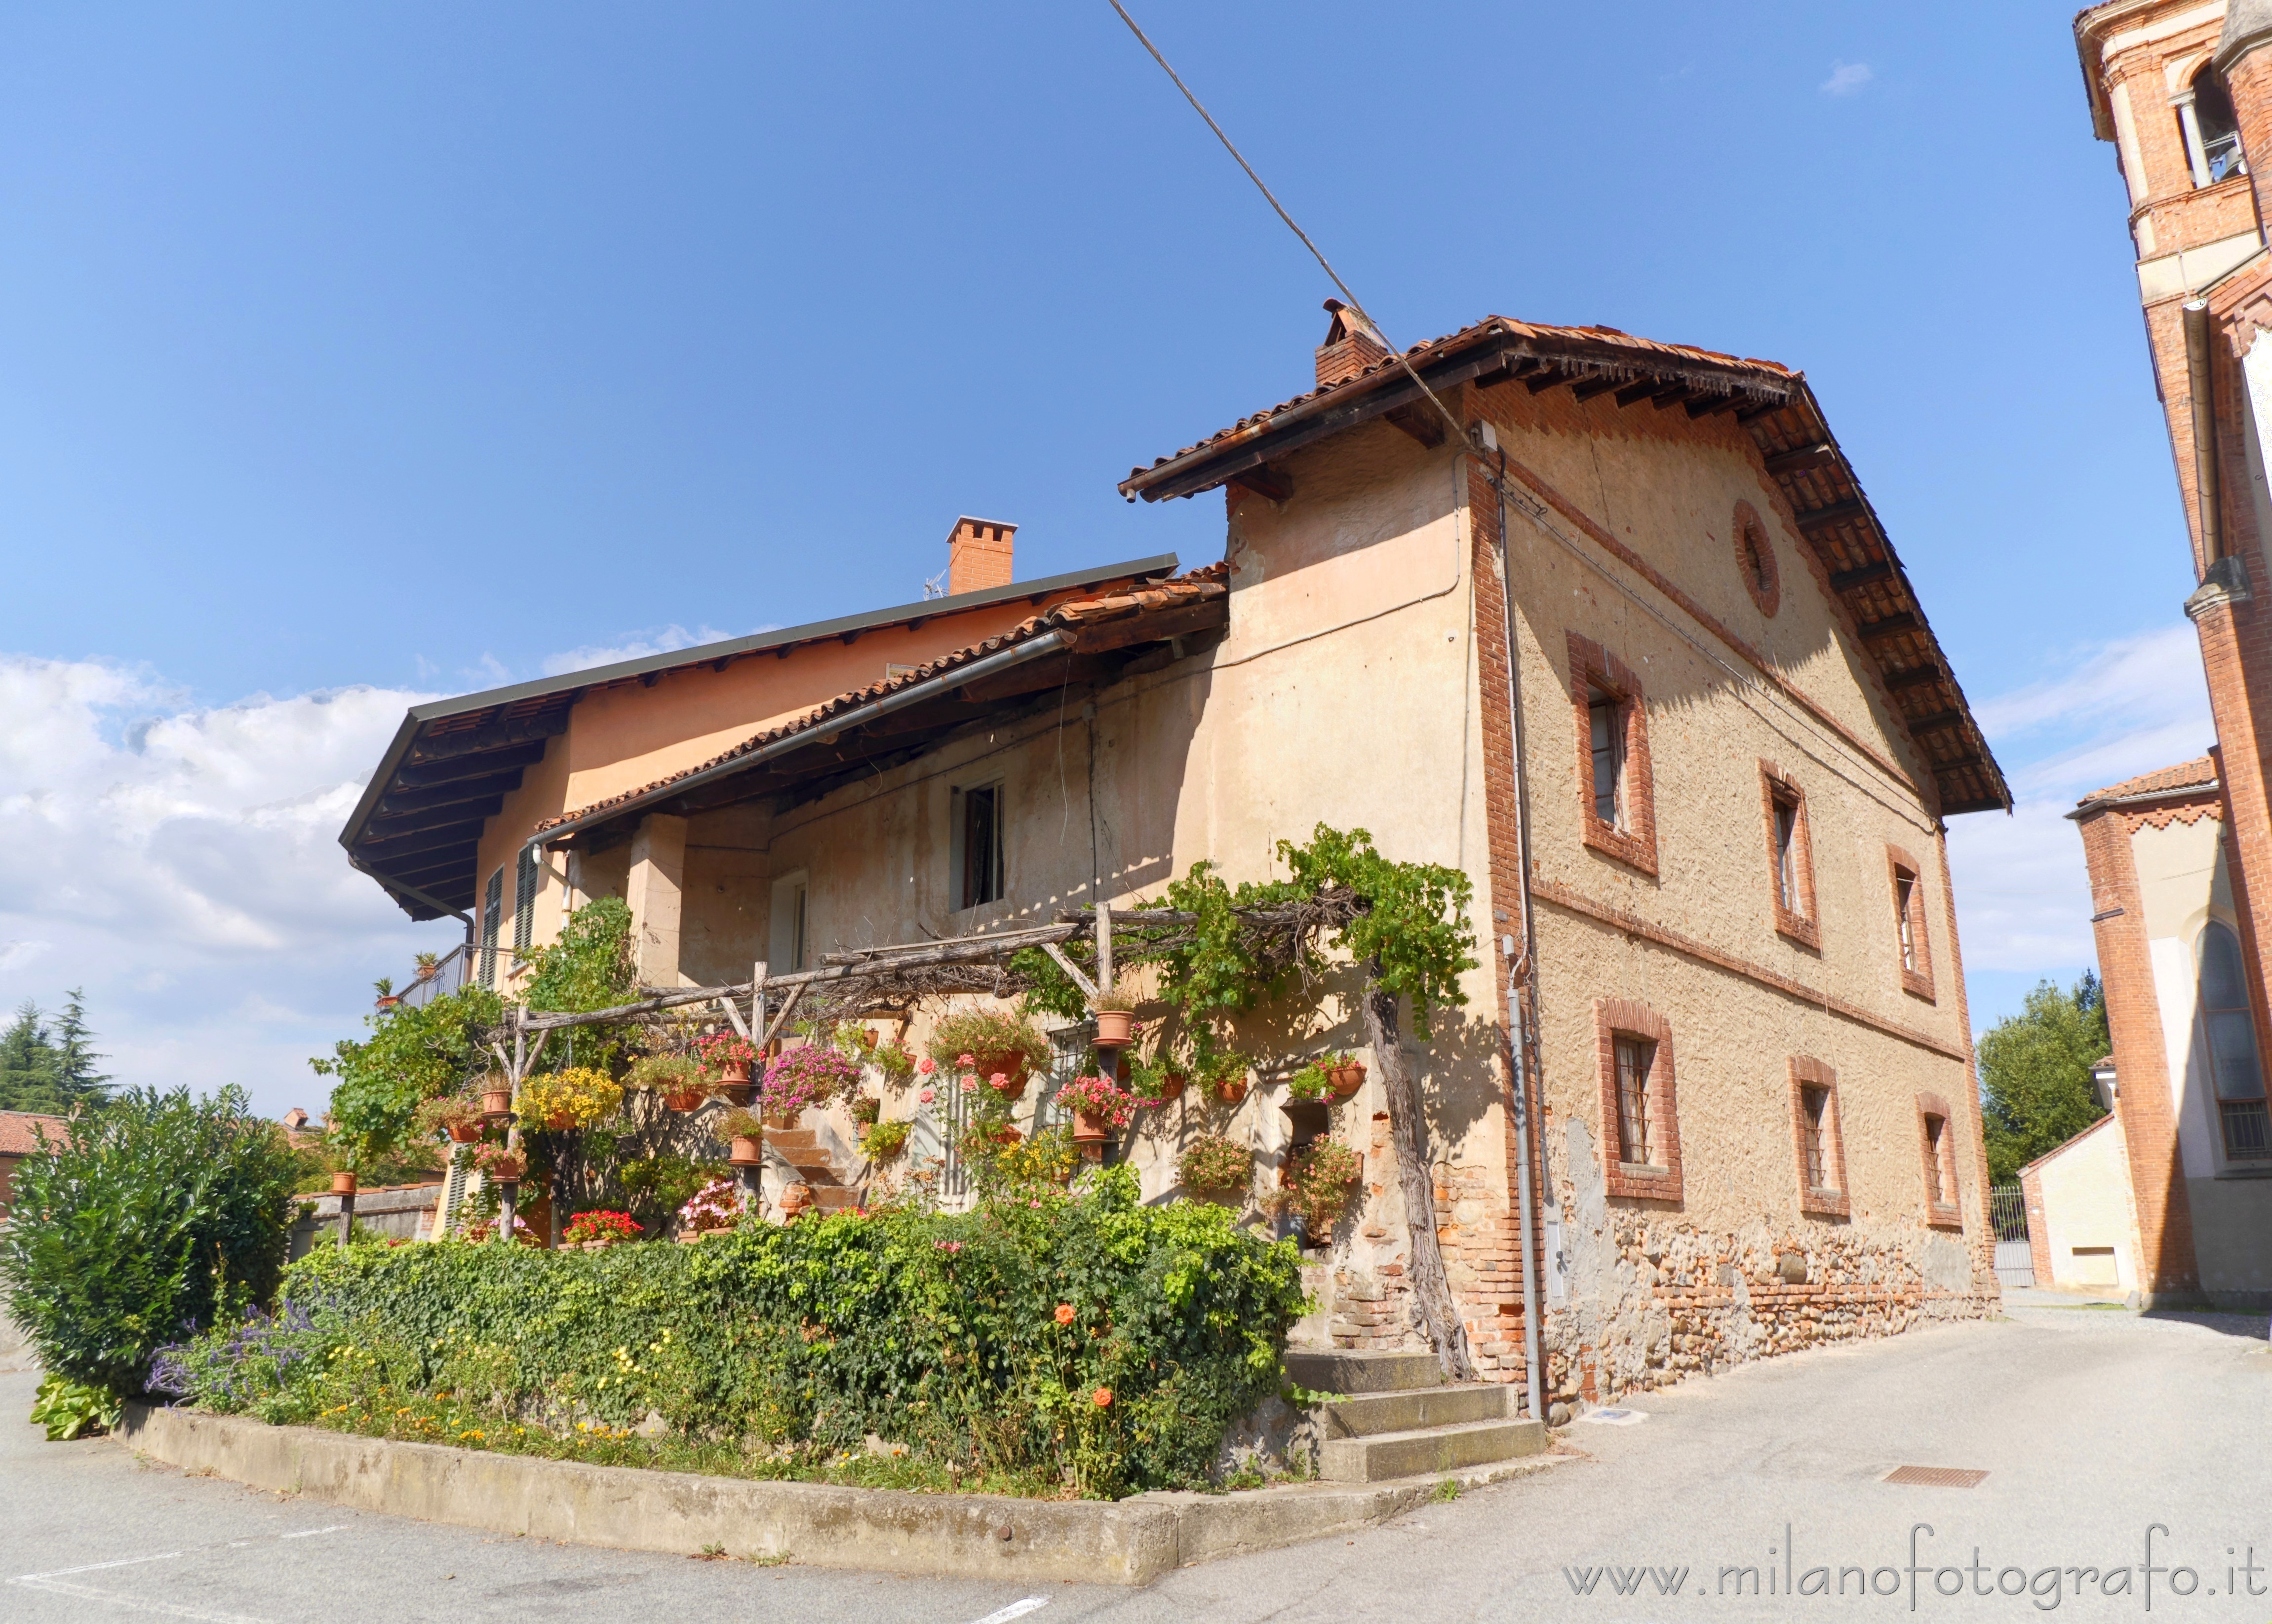 Sandigliano (Biella, Italy): Ancient house of the historic center of the town - Sandigliano (Biella, Italy)